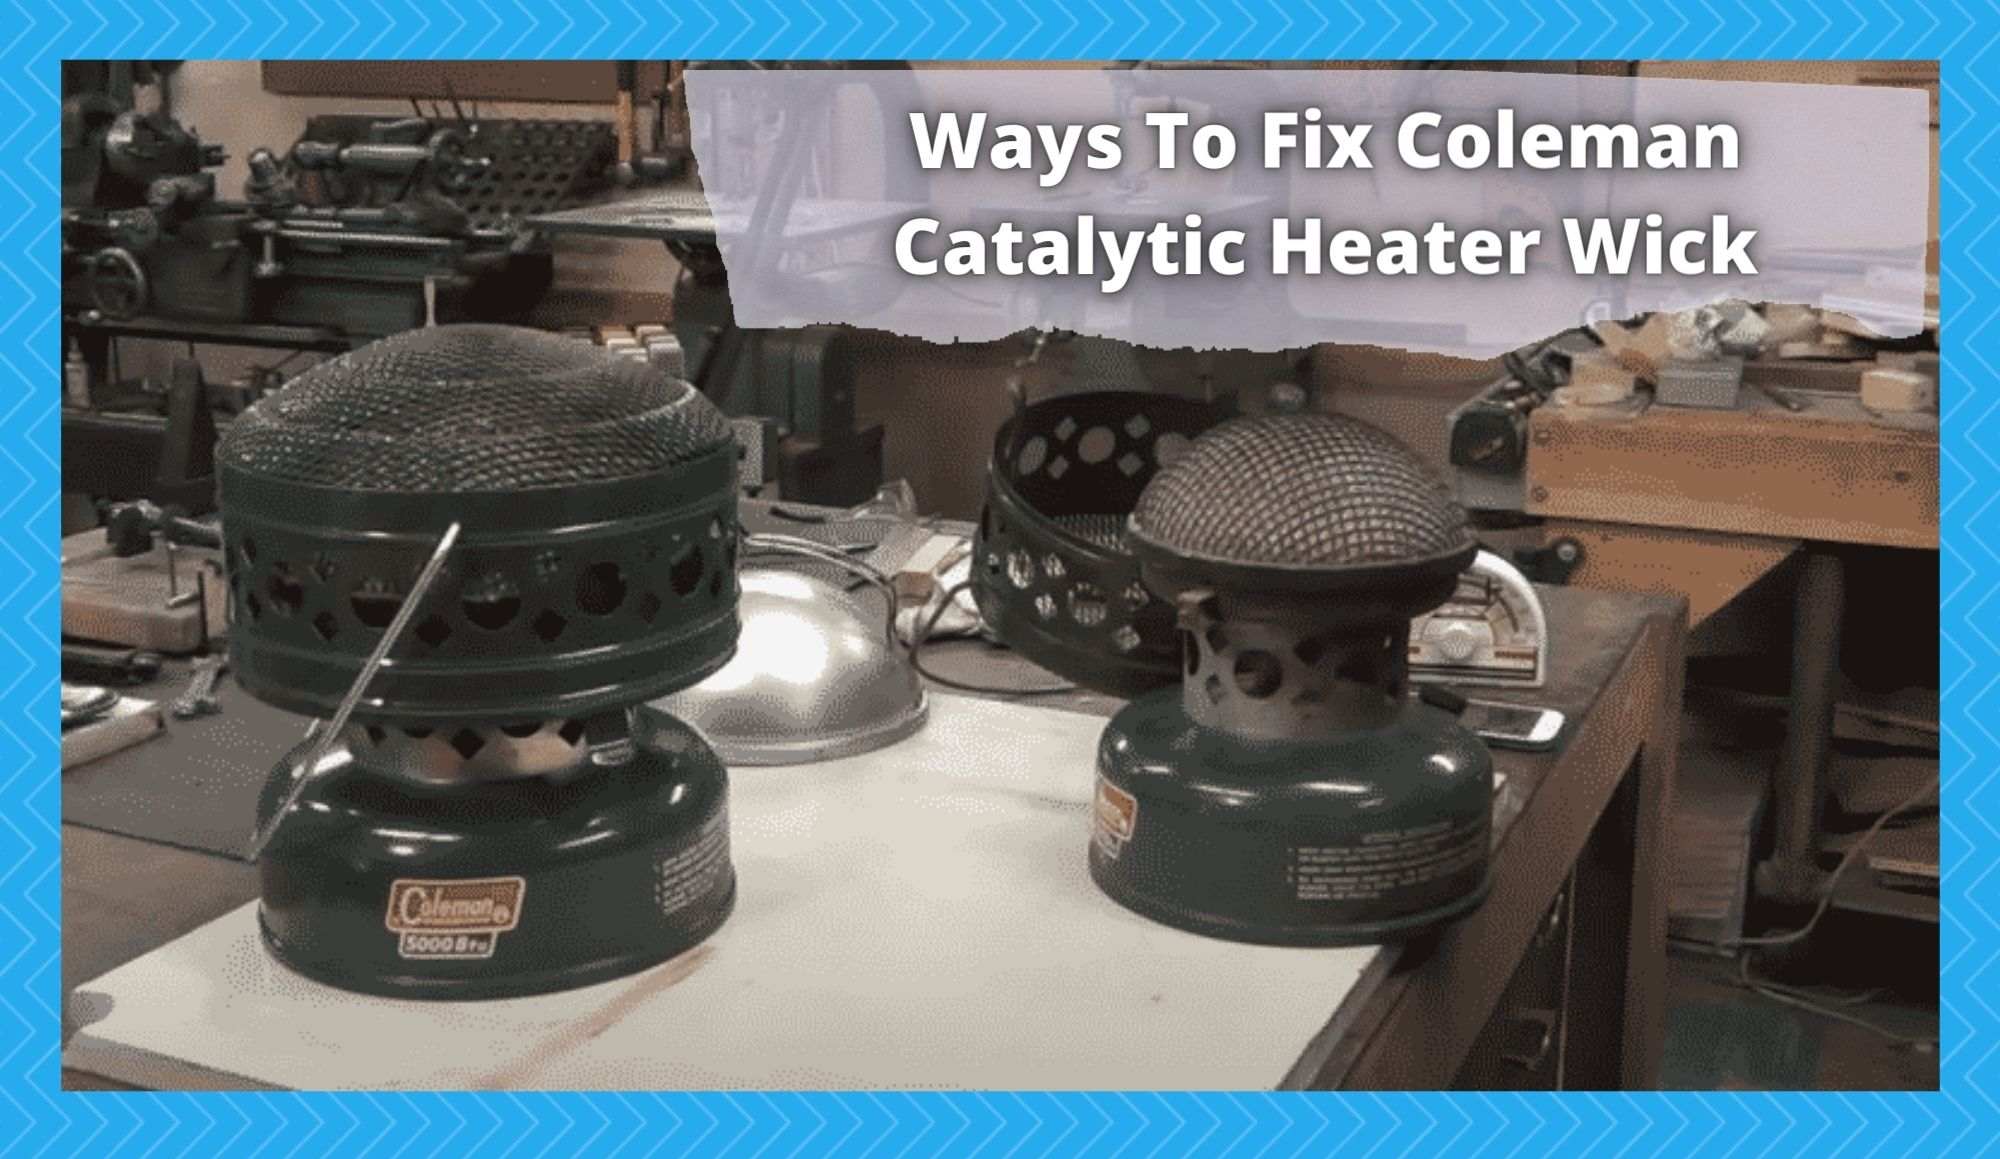 coleman catalytic heater wick fix